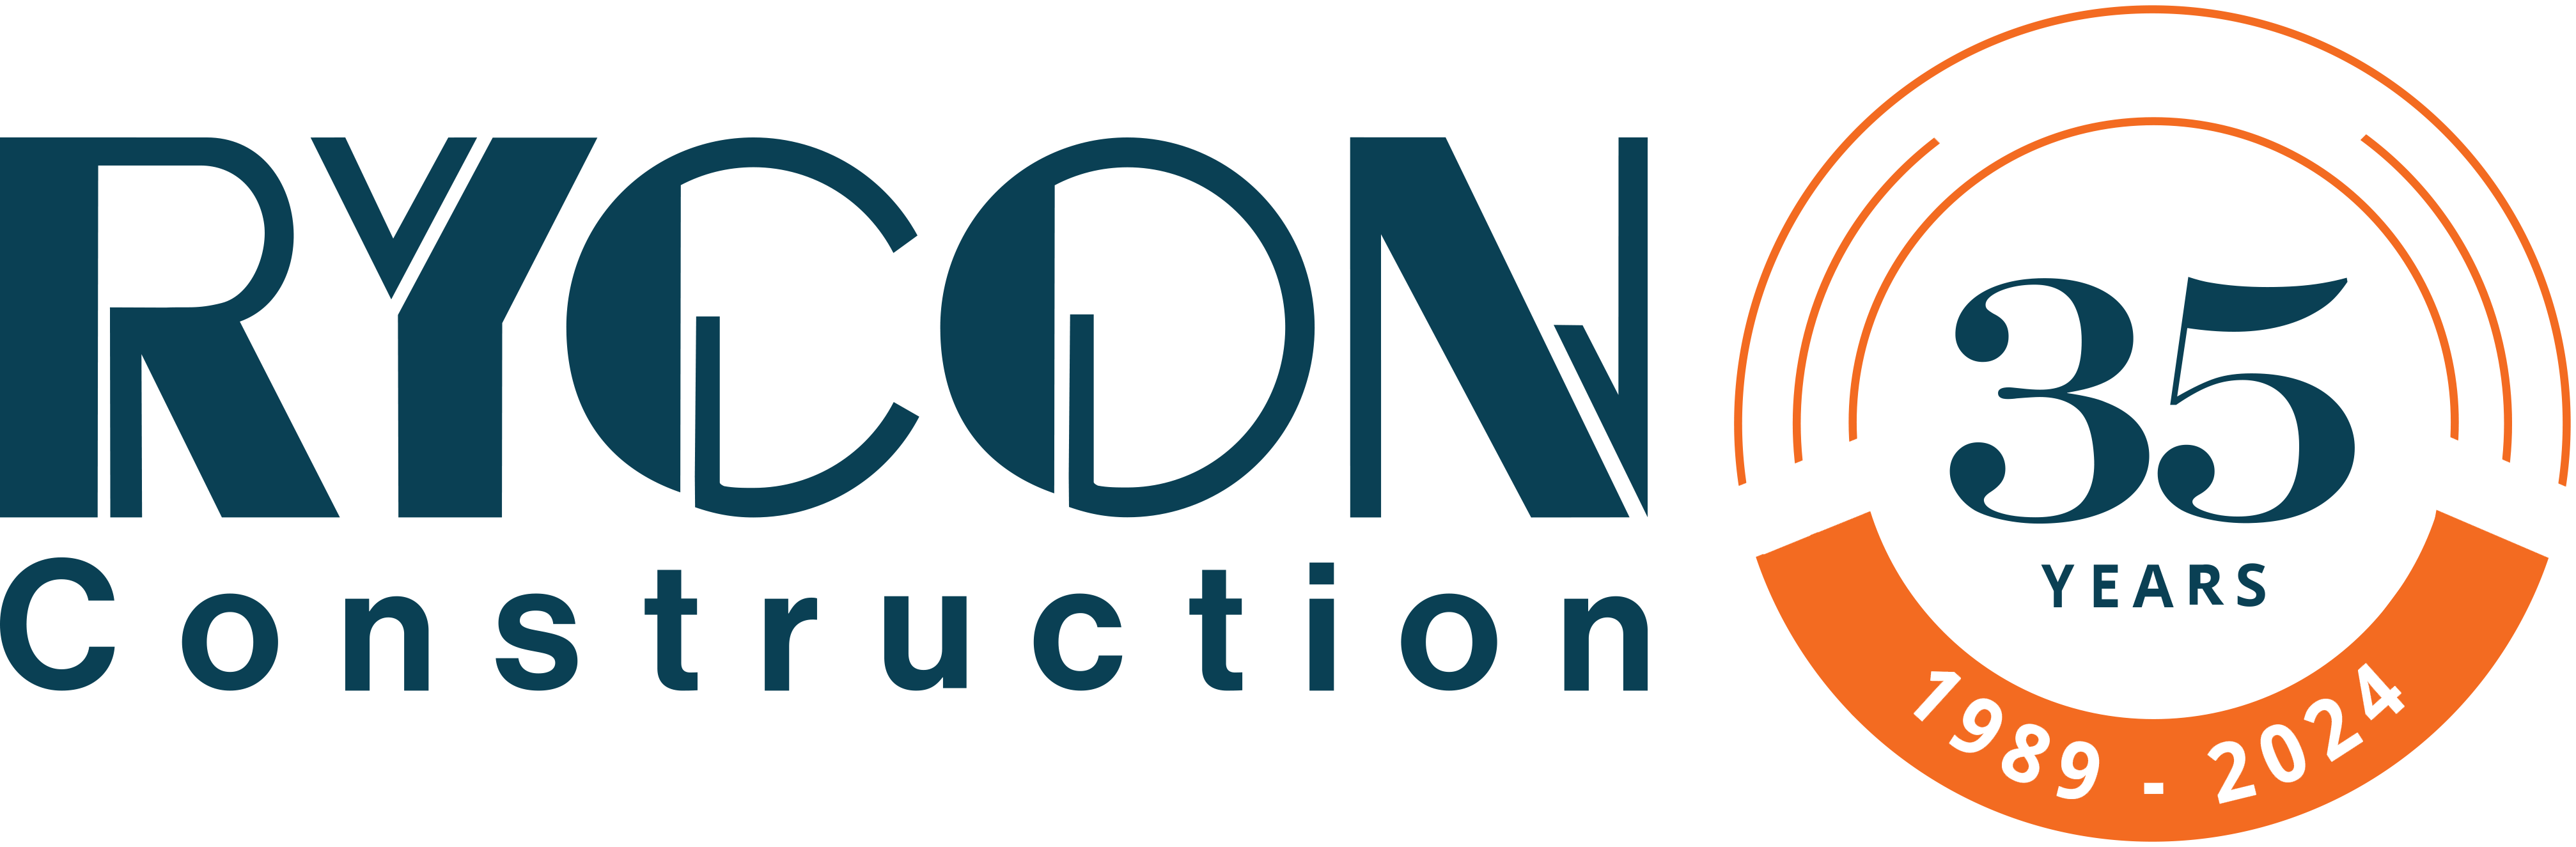 Rycon Logo